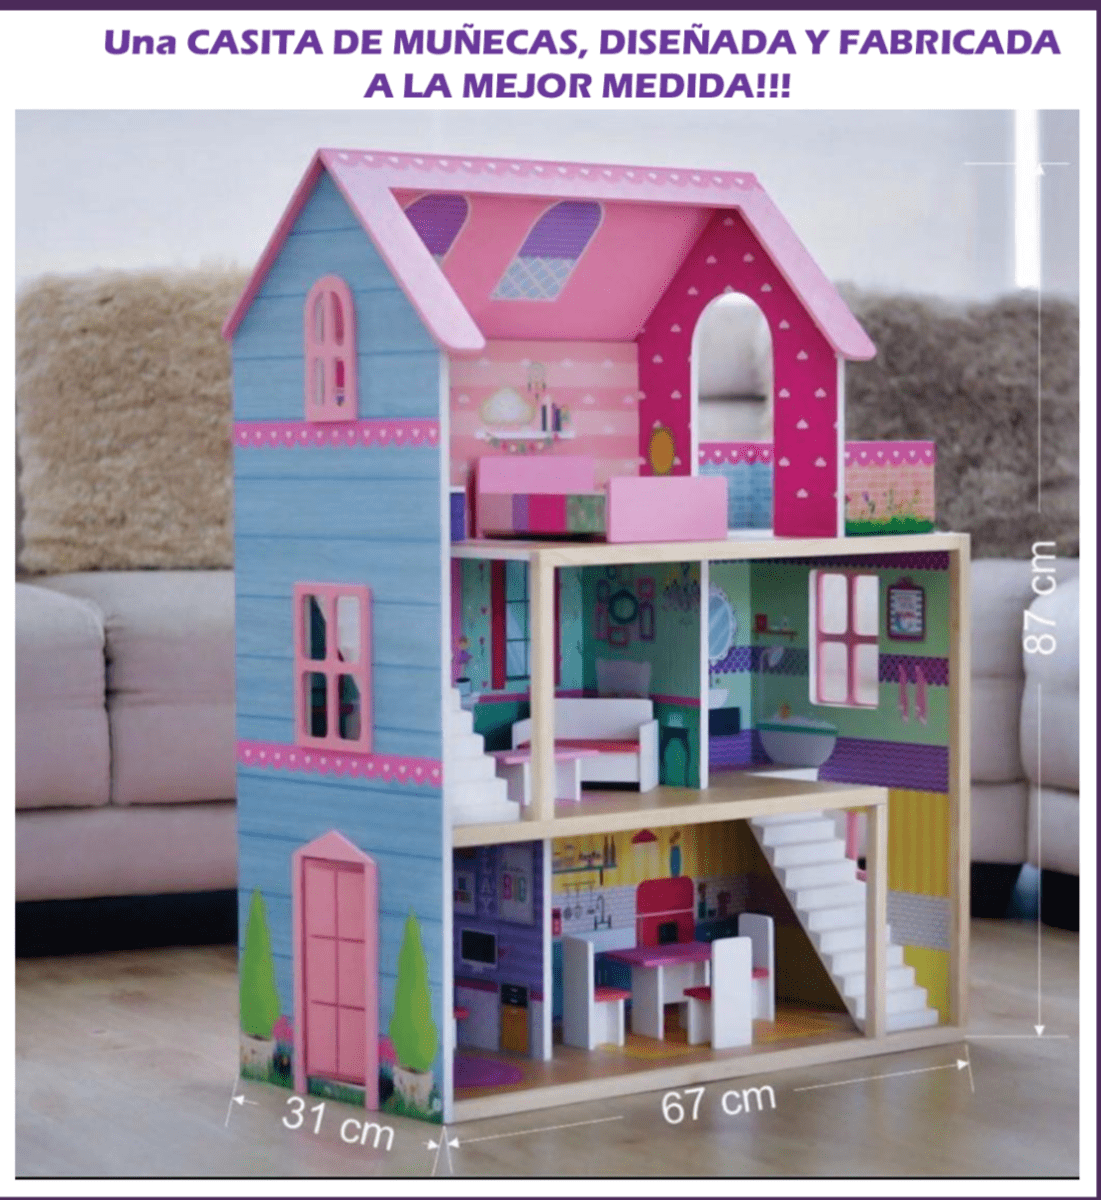 Mancha Cita Insignificante Comprar Casa de Muñecas de Madera | Juguetería RAV toys